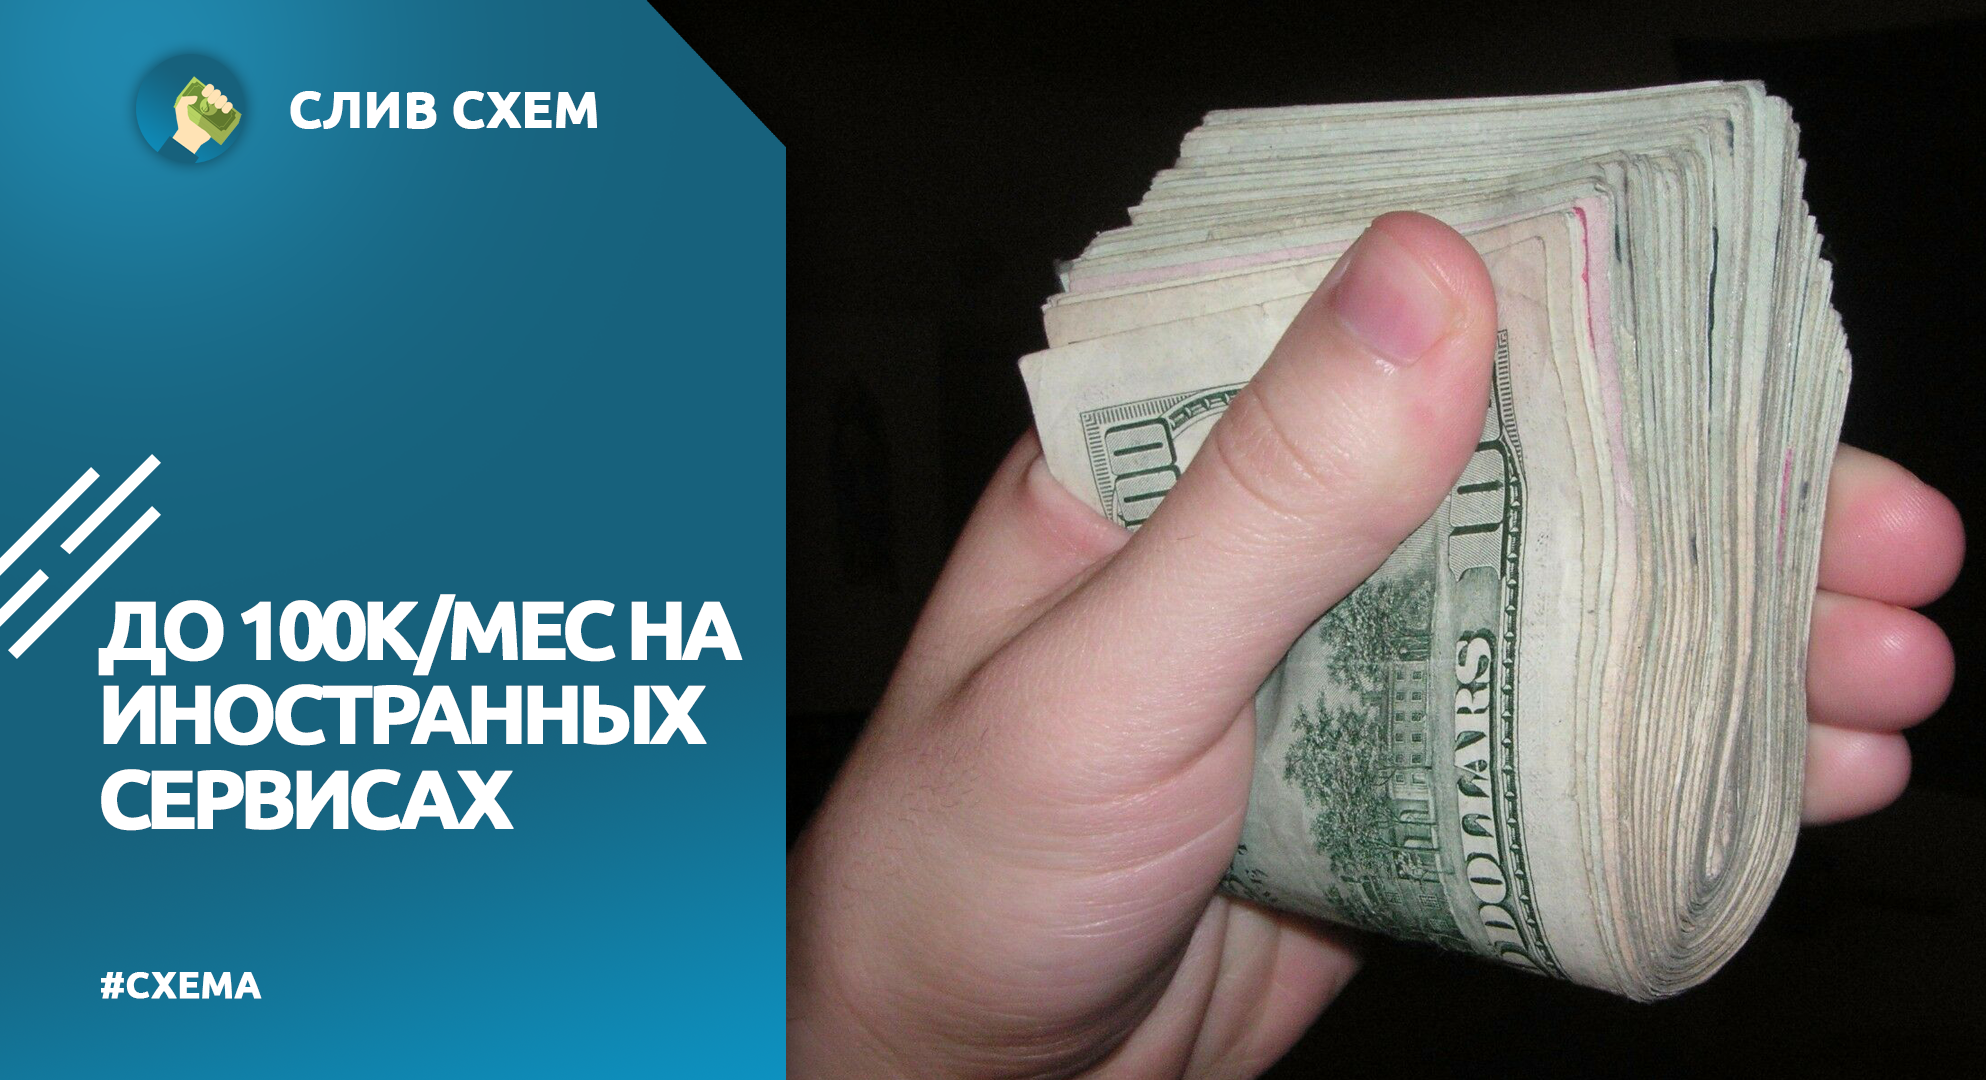 Телеграмм заработок денег без вложений на русском языке фото 41